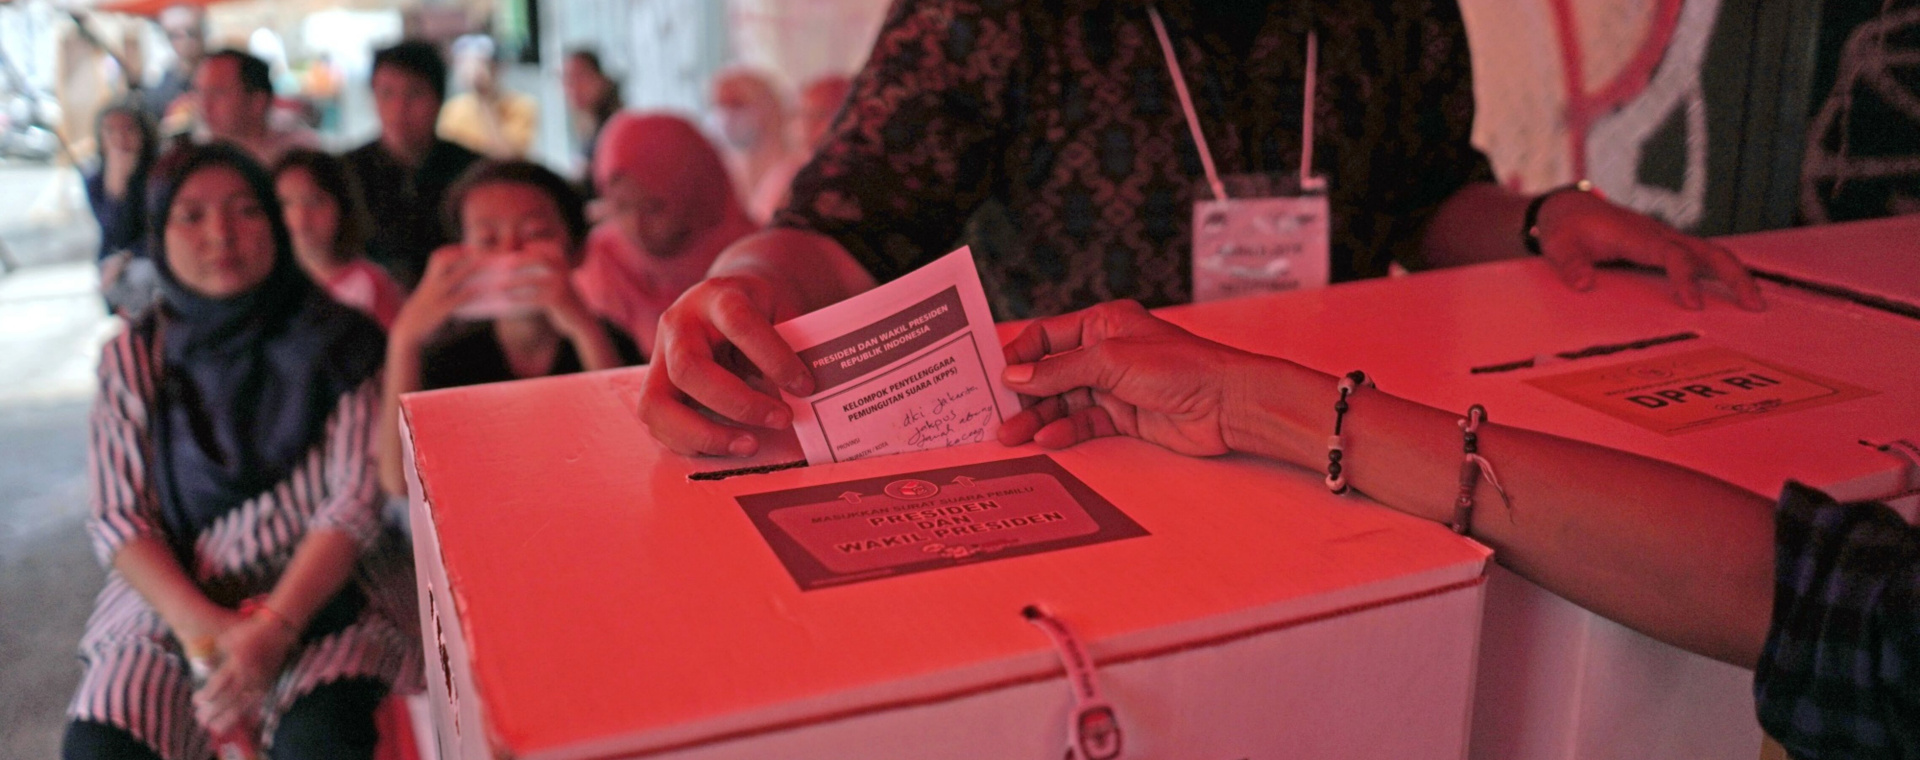 Lengkap! Lokasi TPS Paslon Capres-Cawapres, Jokowi, Maruf, Megawati, JK, hingga SBY. Pemilih memasukkan surat suara ke kotak suara di Tanah Abang, Jakarta saat pelaksanaan pemilu serentak 2019. - Bloomberg/Dimas Ardian